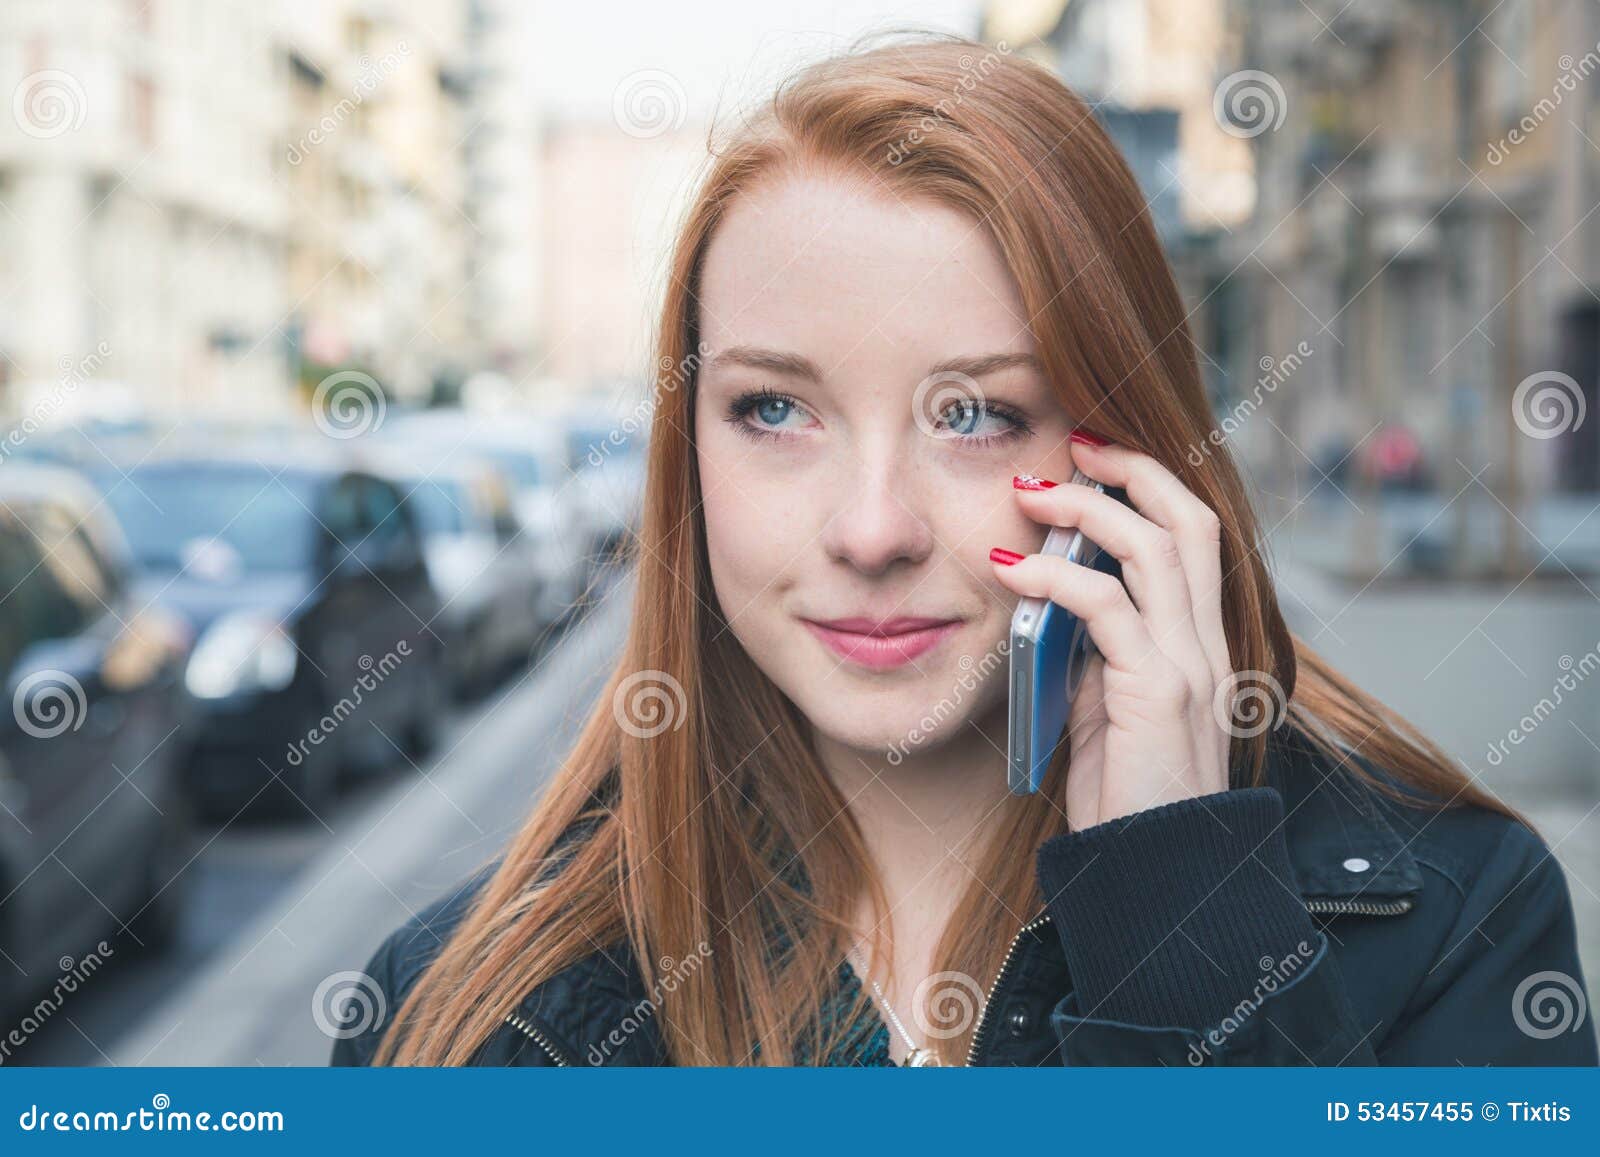 Сказать мужским голосом. Говорит по телефону на улице. Девушка разговаривает по телефону на улице. Баба с мужским голосом. Девушка говорит по айфону на улице.